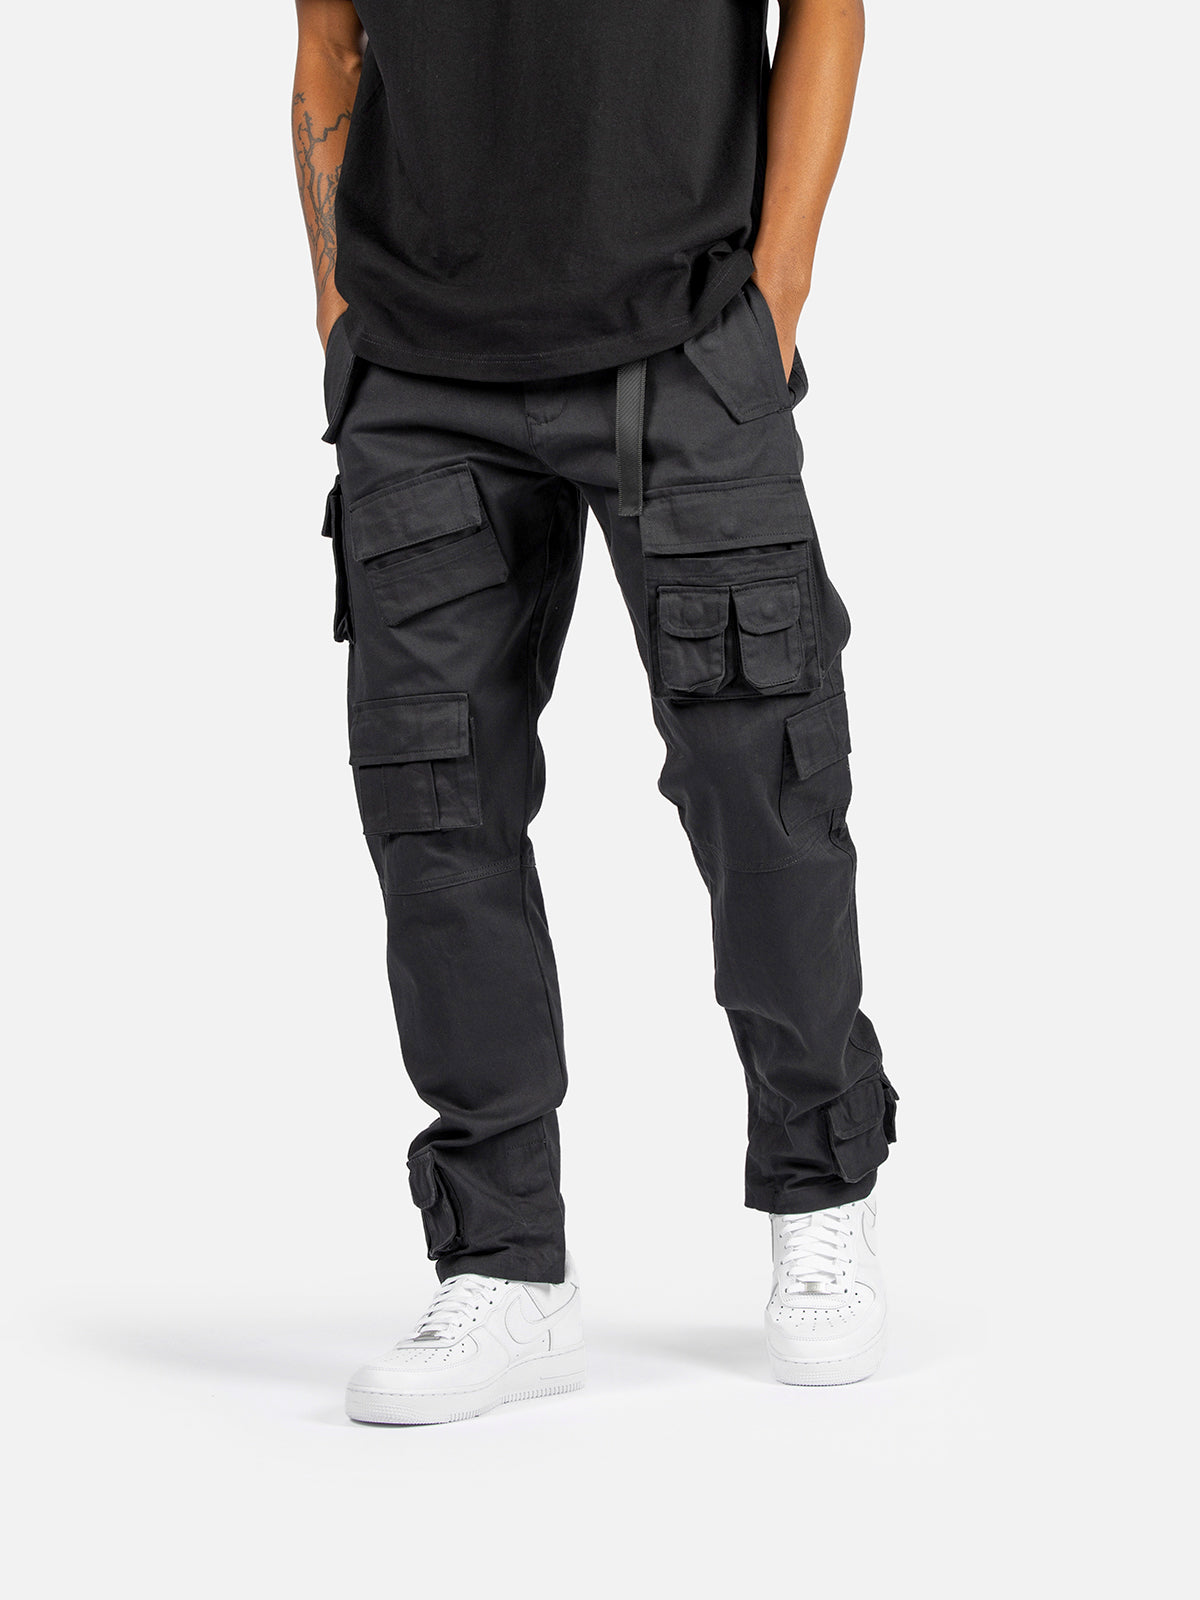 X1 Cargo Pants - Black | Blacktailor – BLACKTAILOR